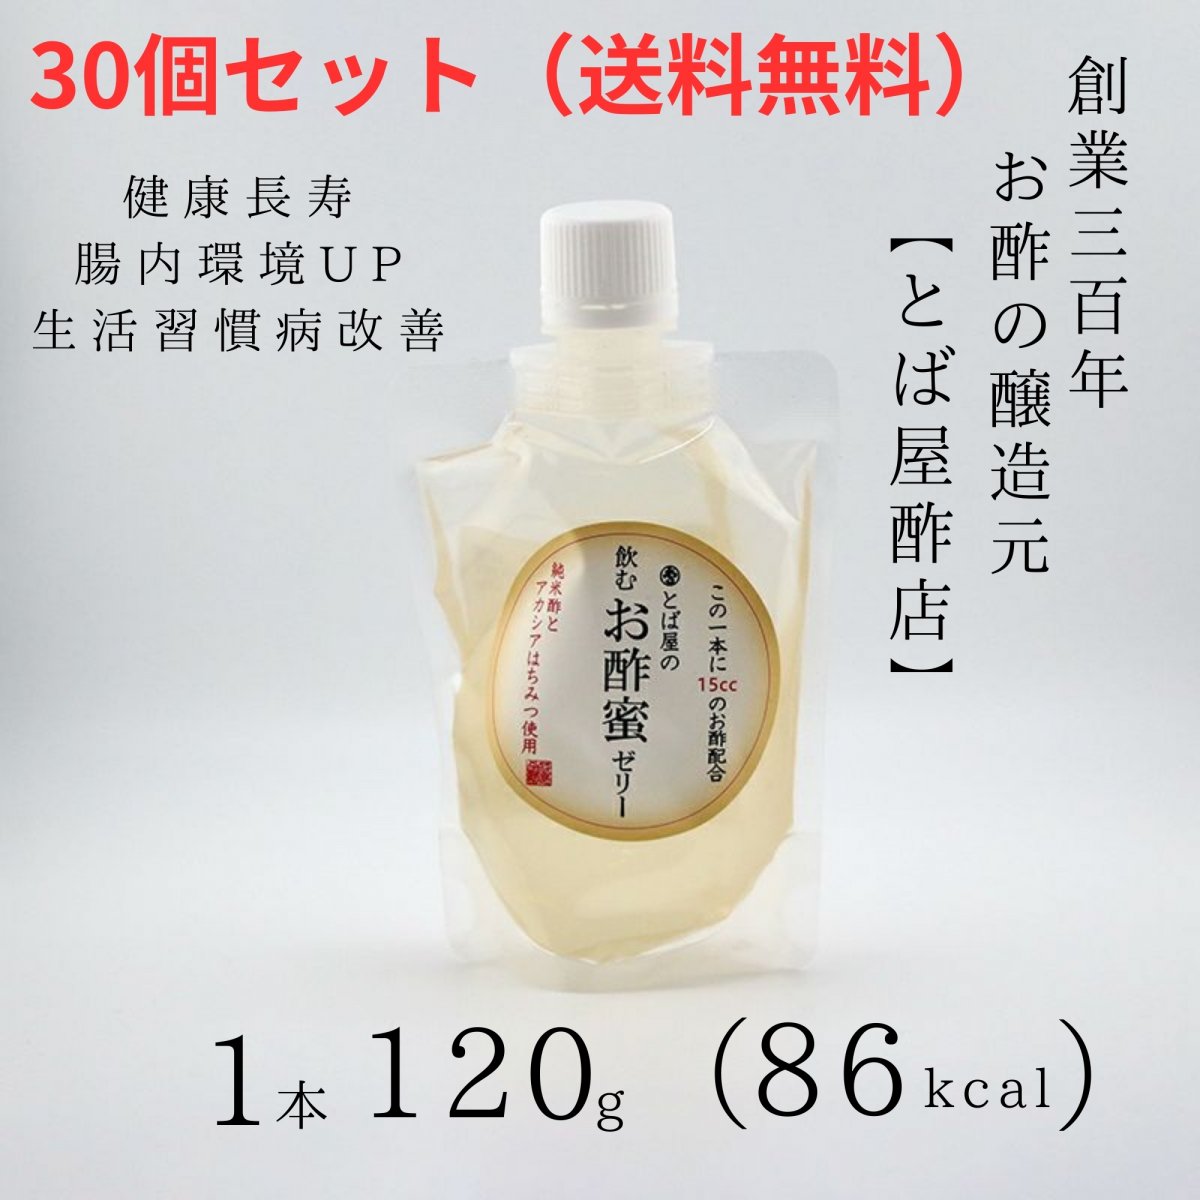 「30個セット 送料無料」飲むお酢蜜ゼリー蜜味（120g×1本）